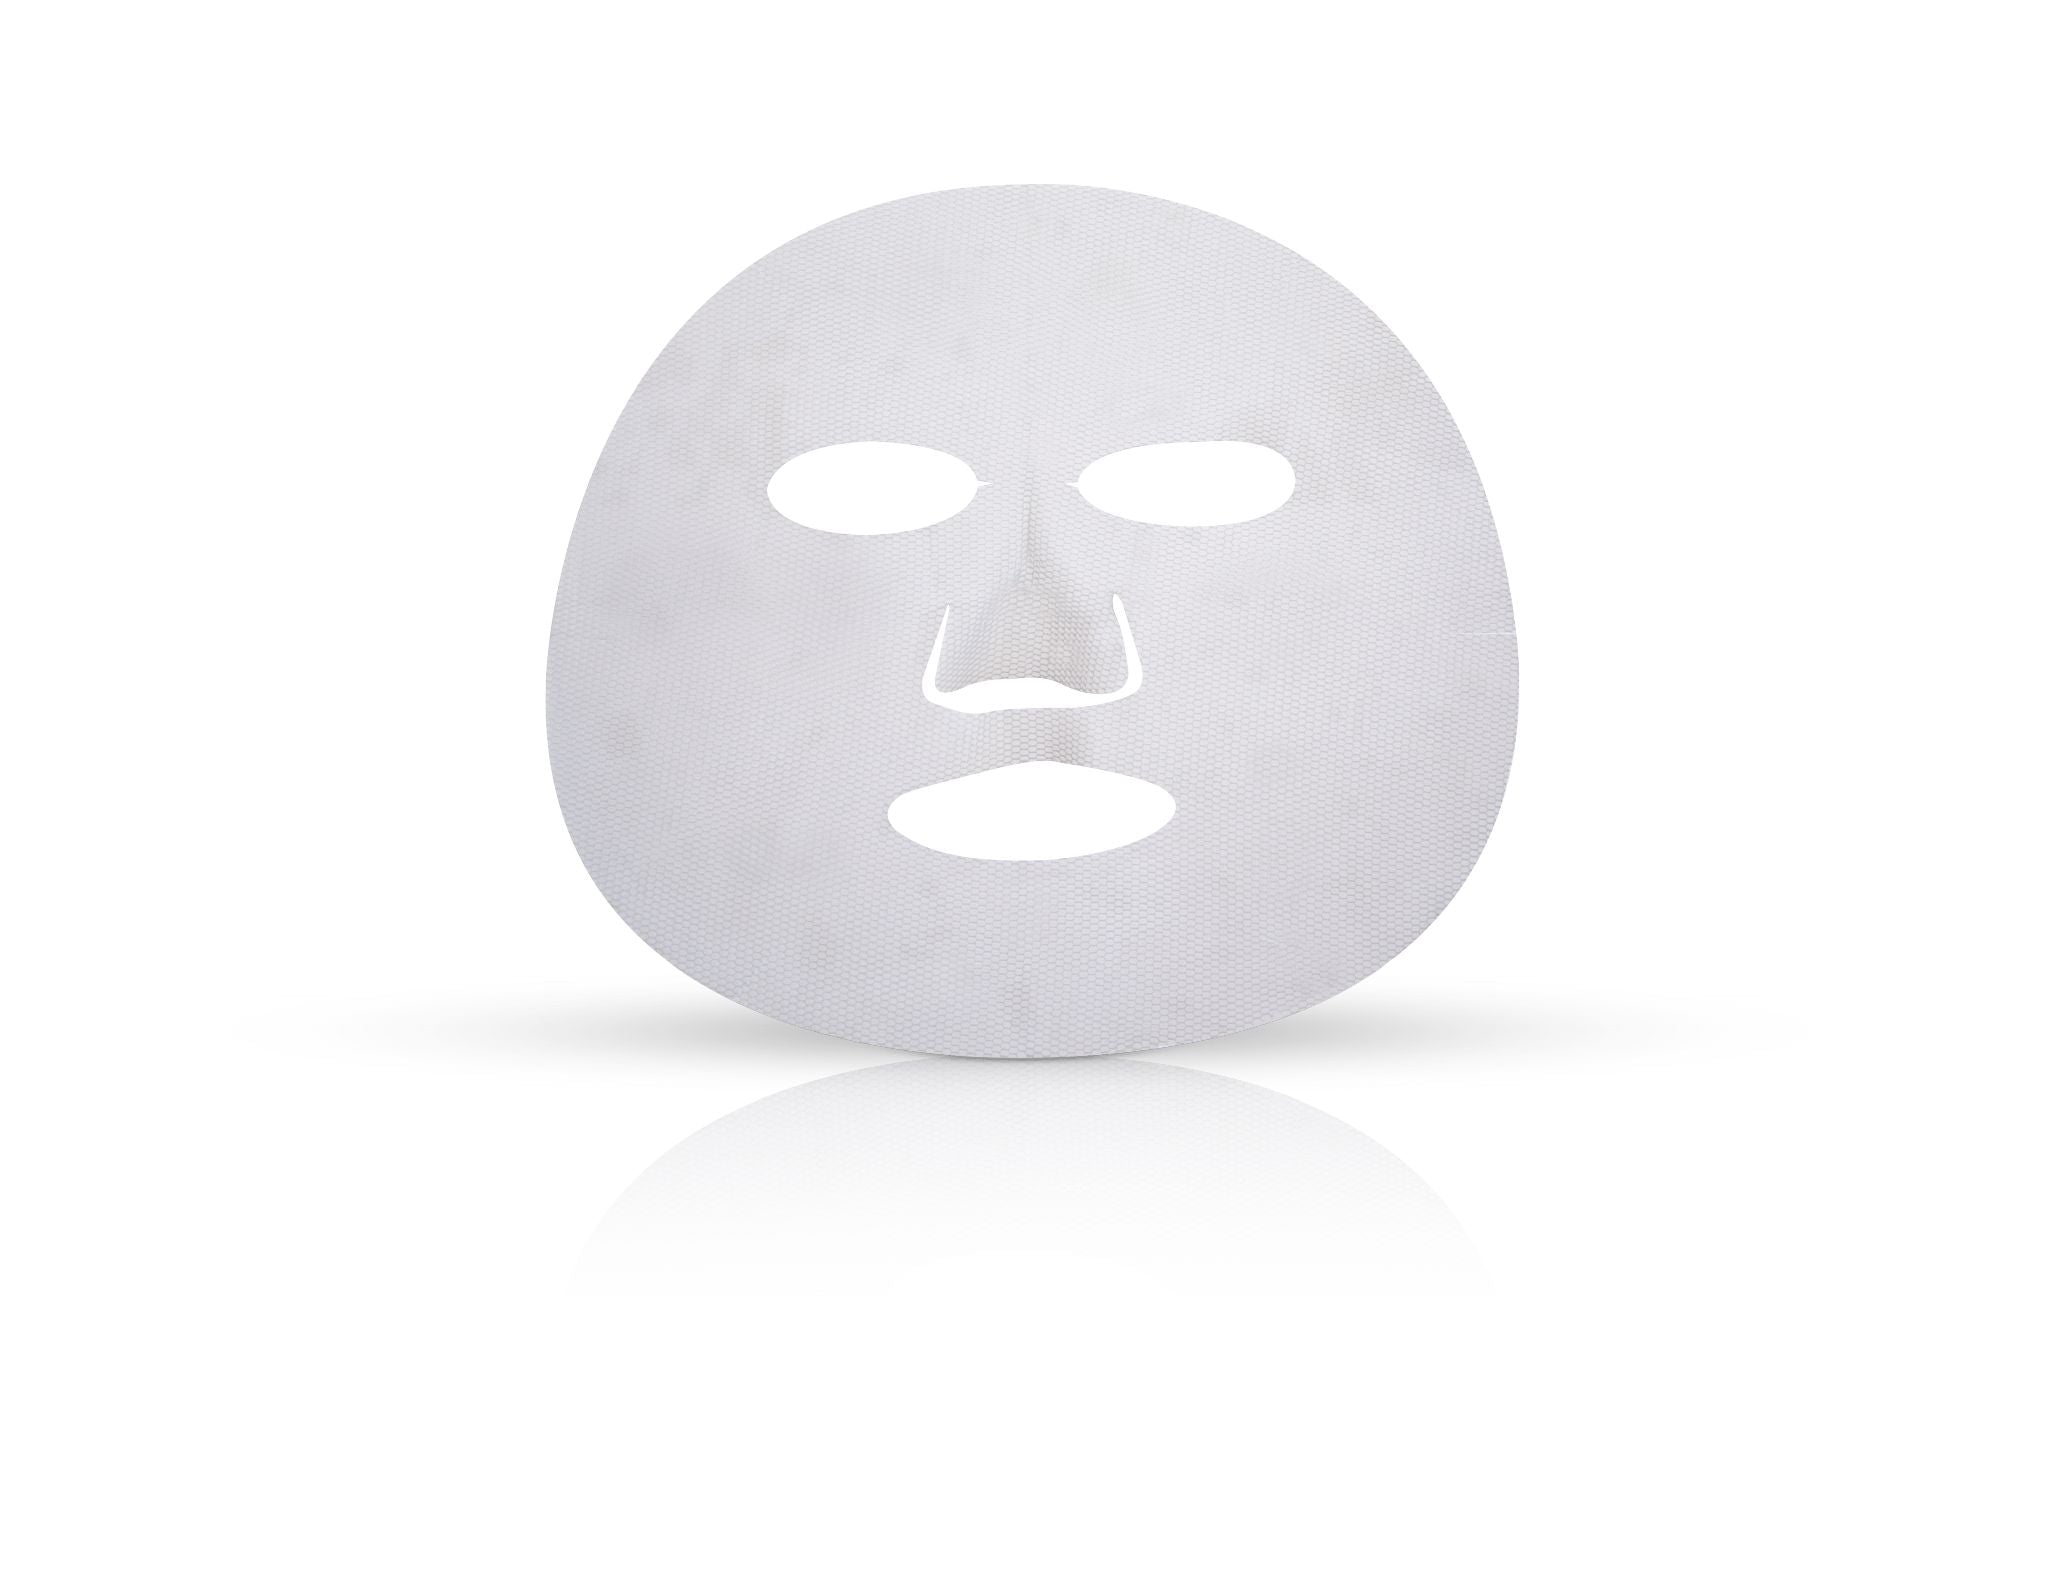 Neocutis Neo Restore Mask (6 Count)